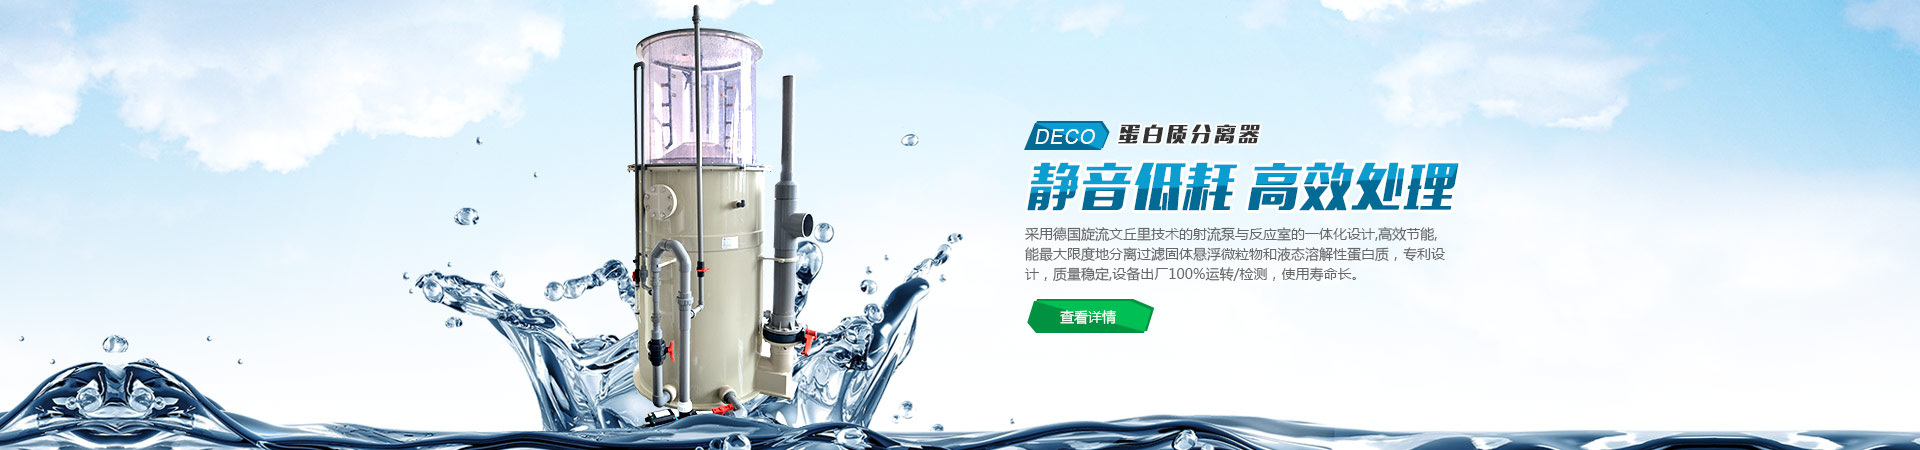 北京东方泵福机械设备有限公司